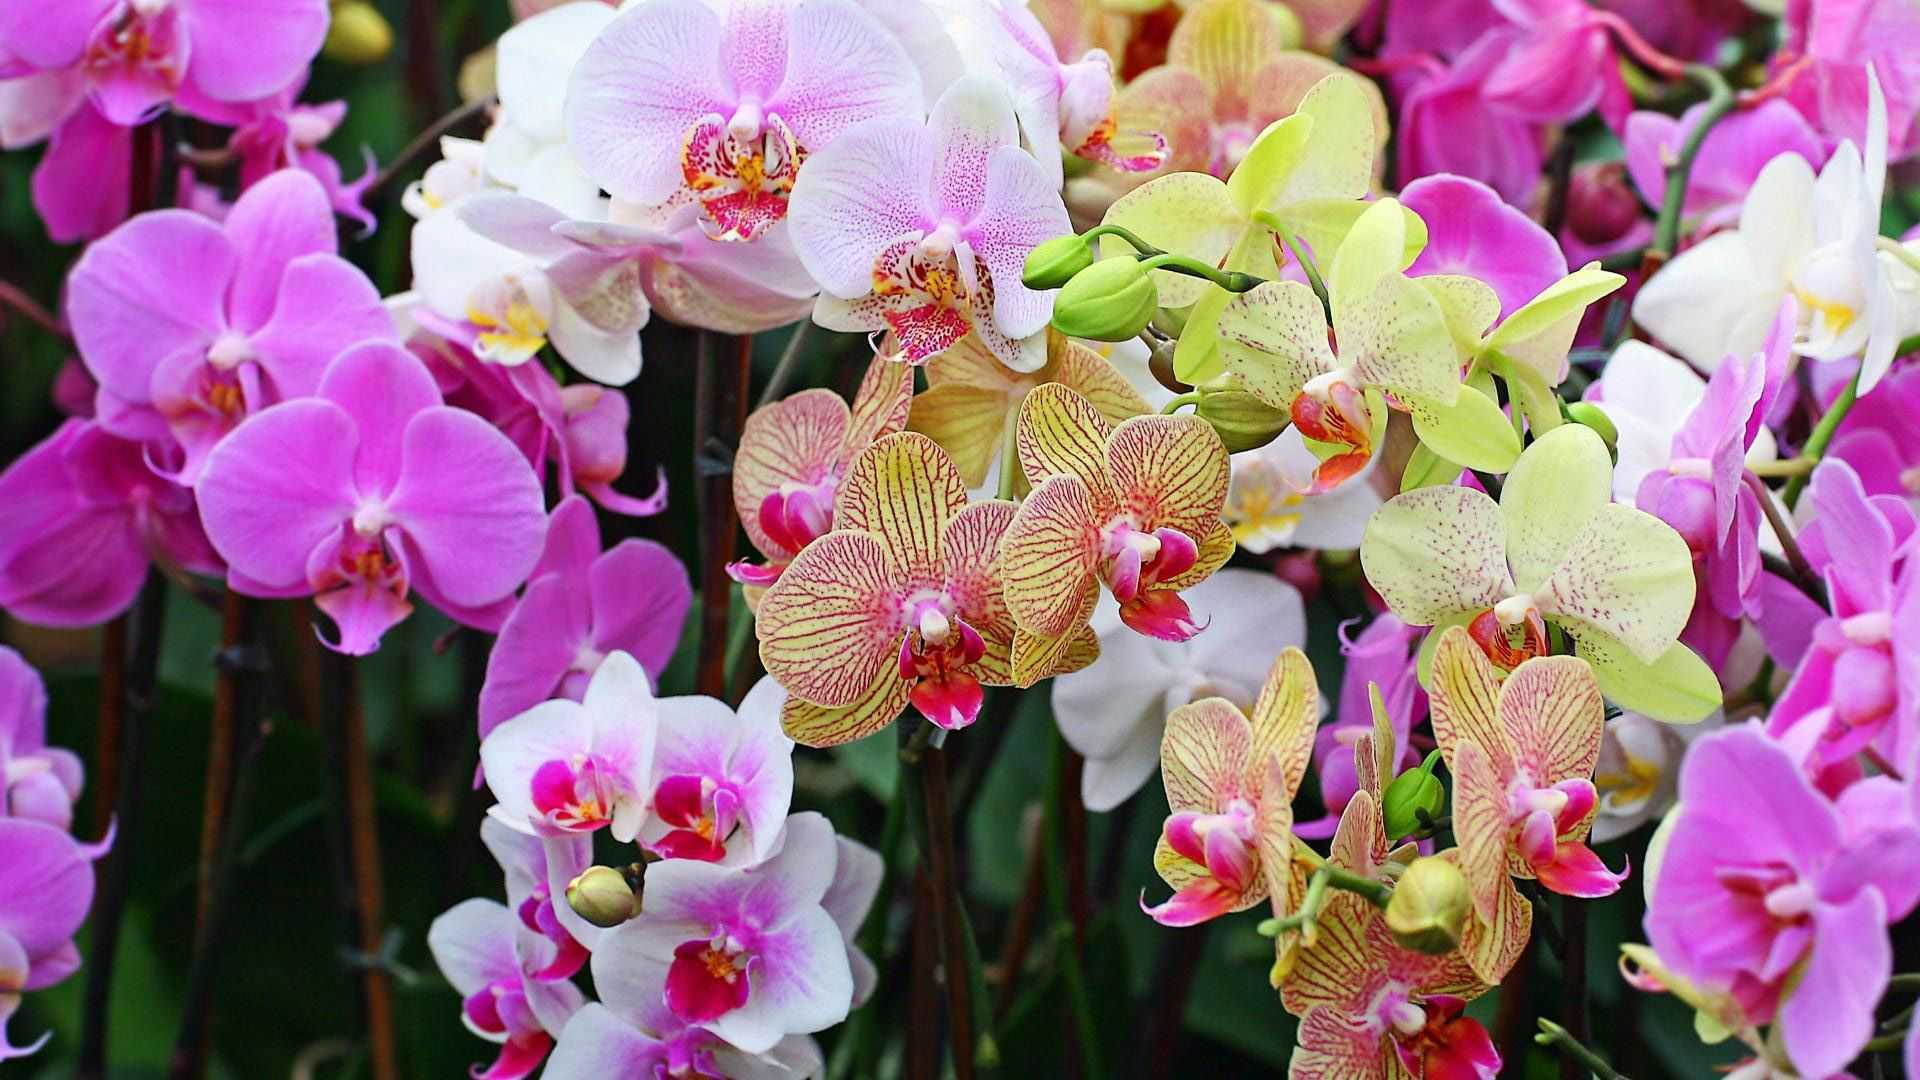 Выращивания орхидей в домашних условиях. советы начинающим цветоводам.